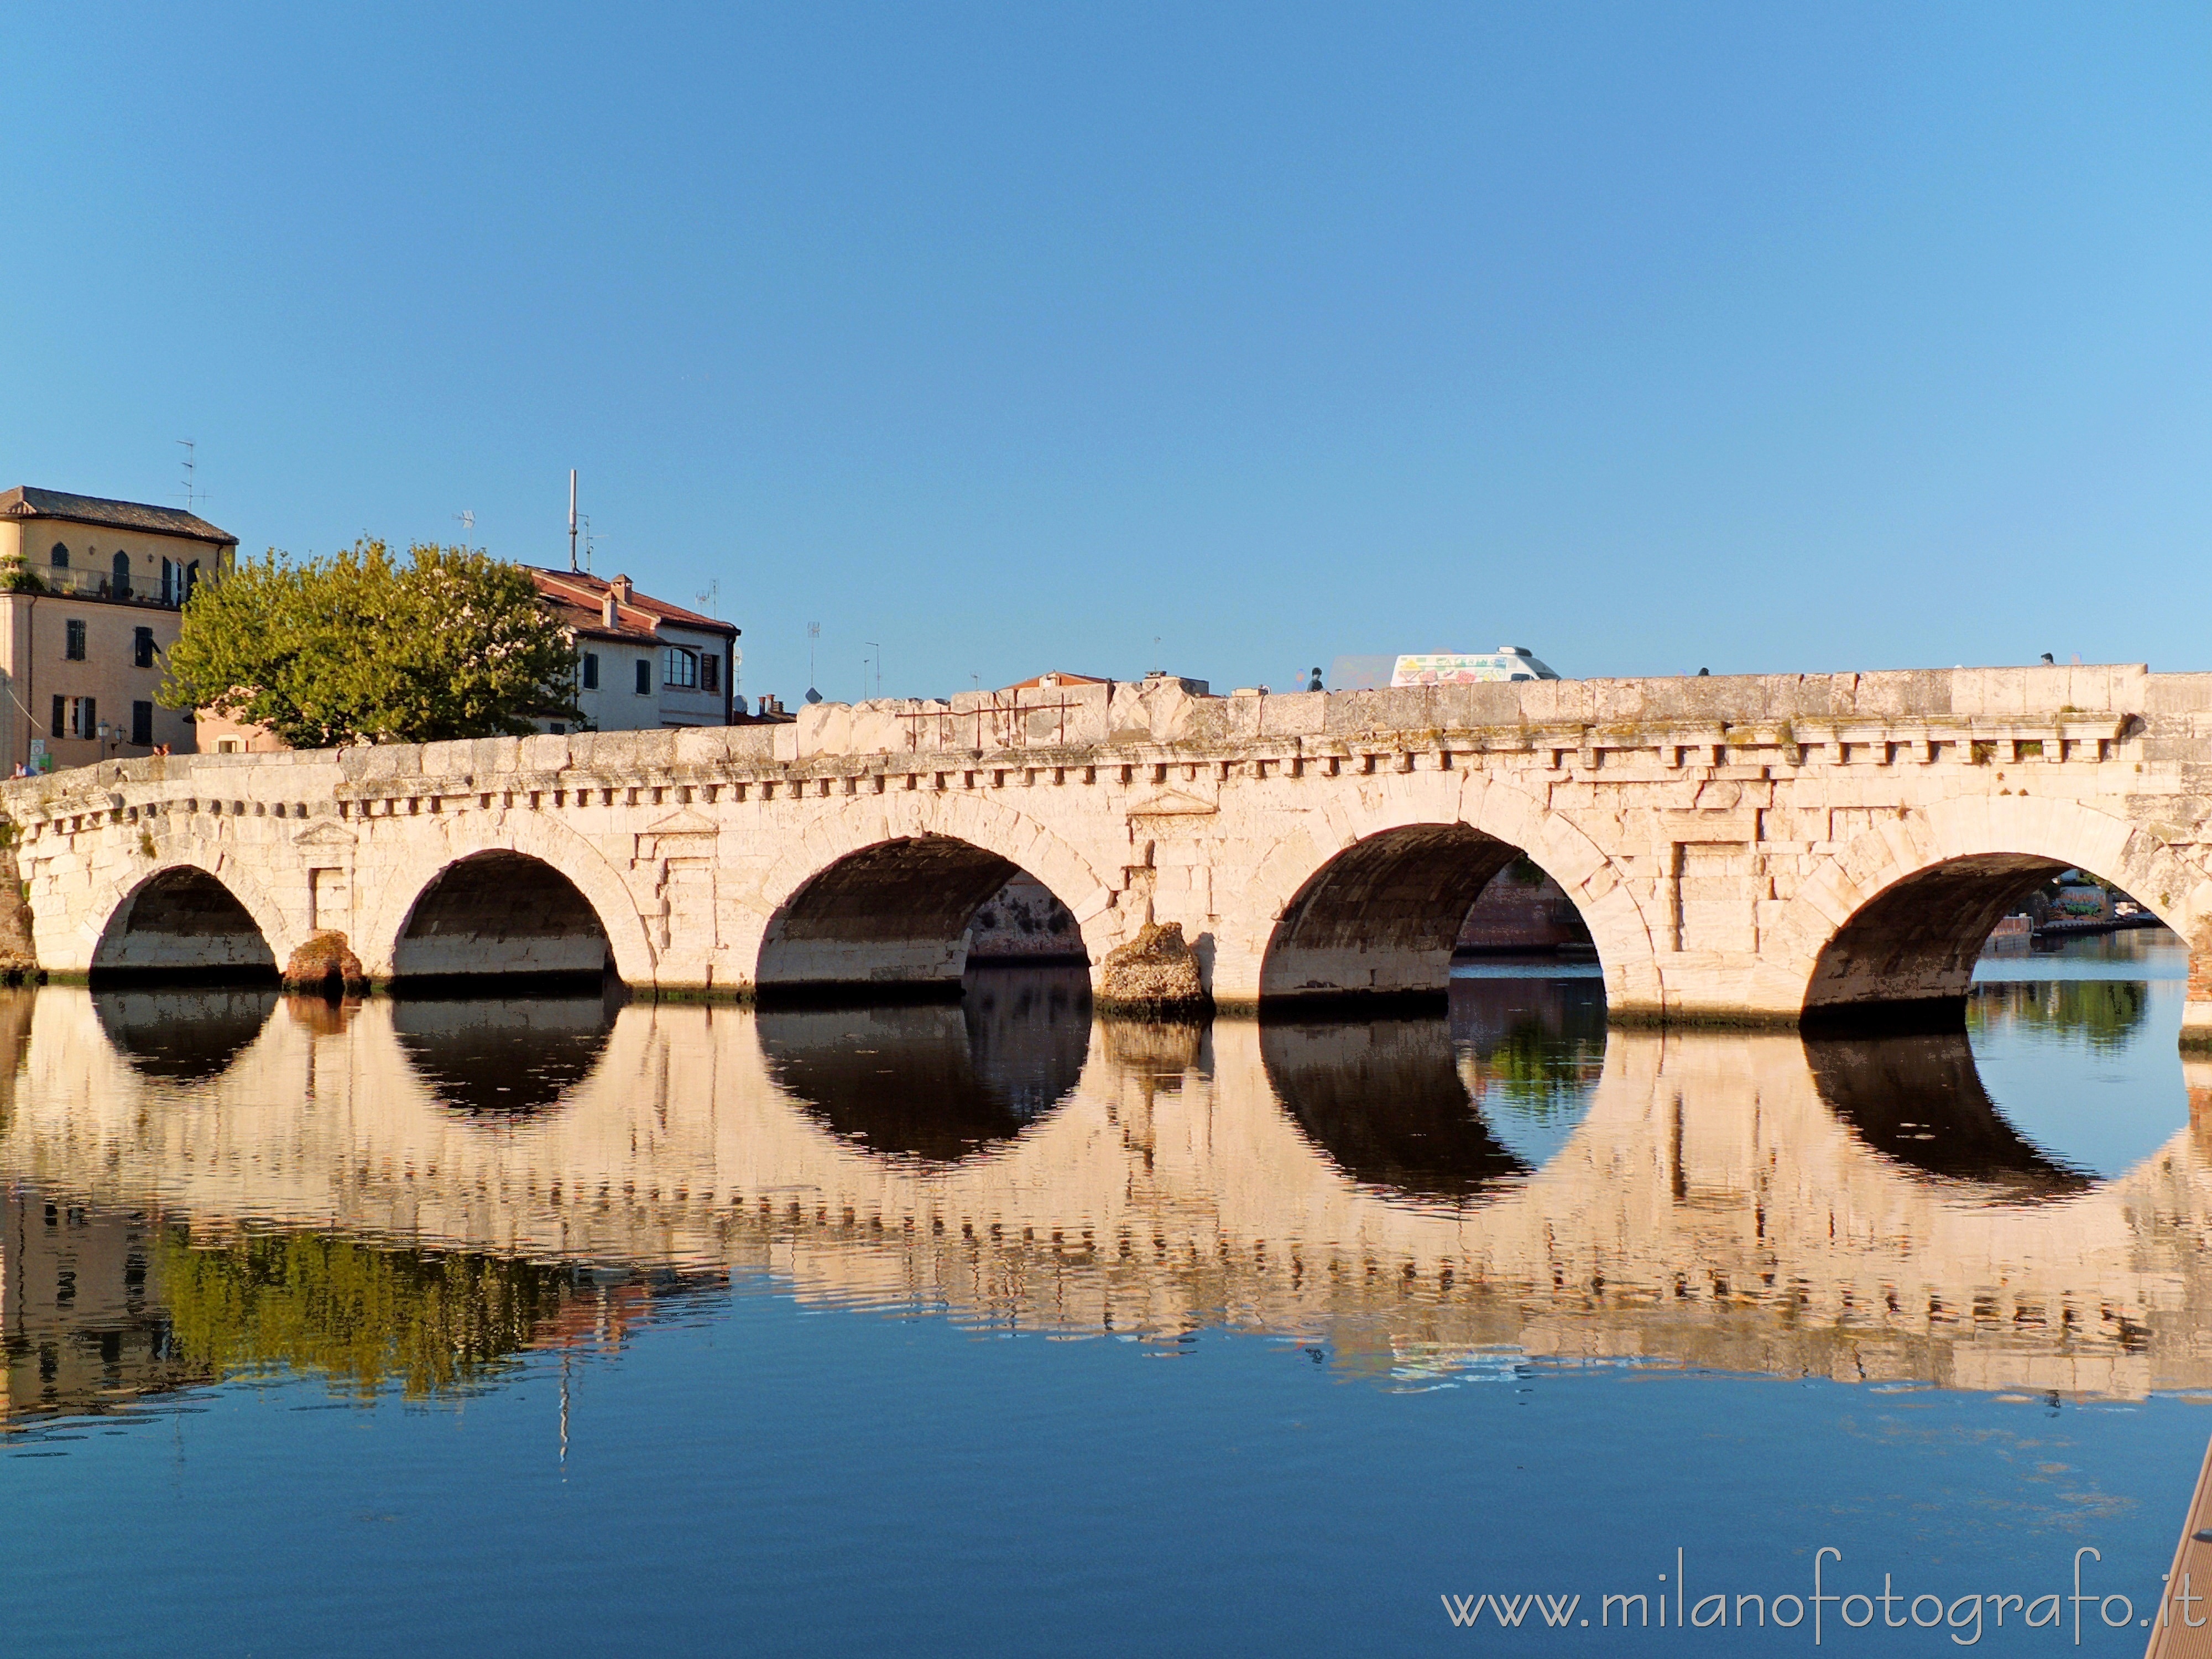 Rimini (Italy): Bridge of Tiberius - Rimini (Italy)